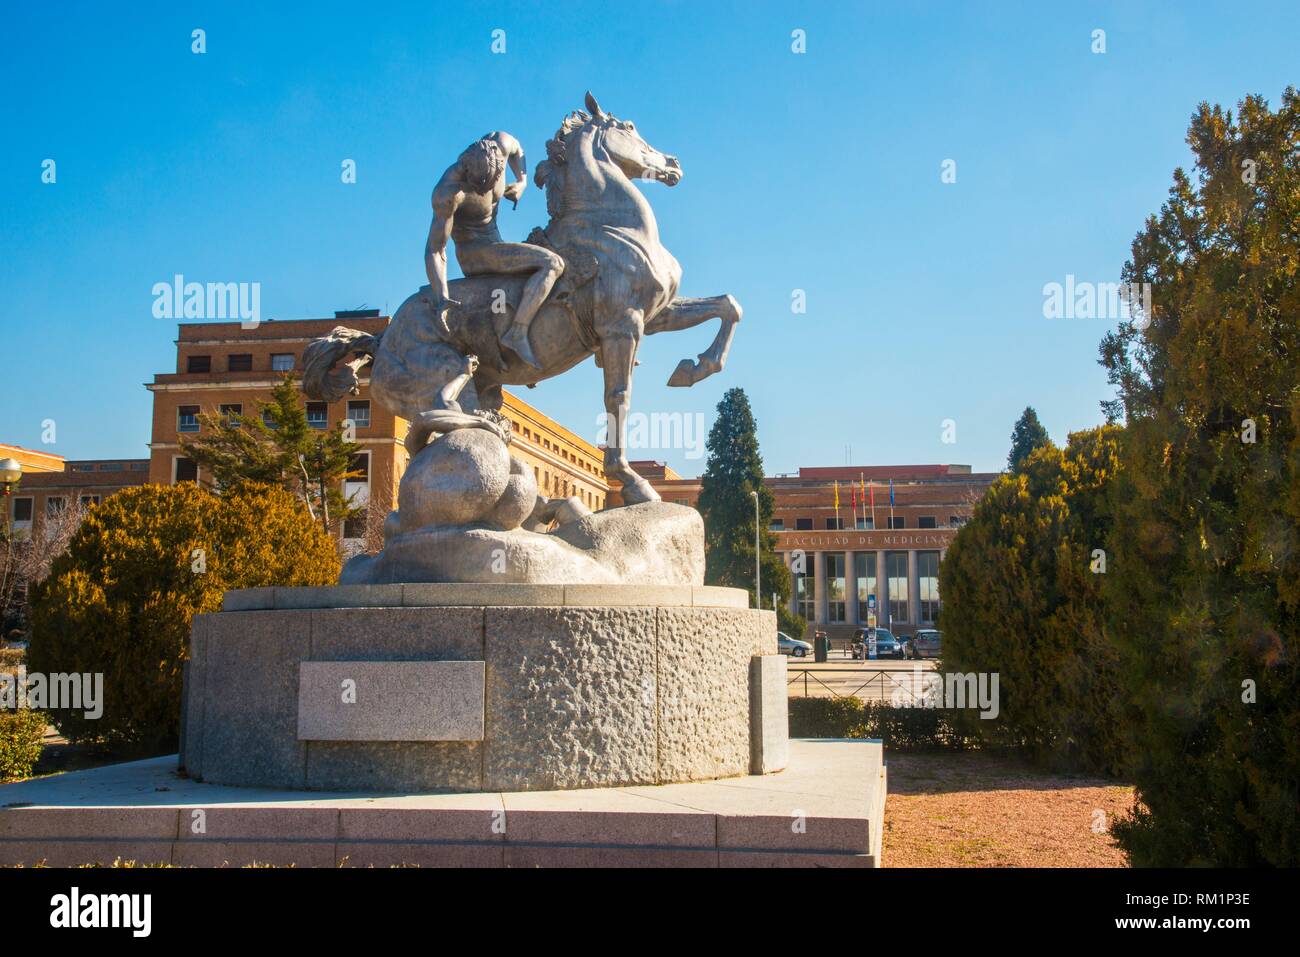 Los portadores de la antorcha, sculpture by Anna Hyatt Huntington. Ciudad Universitaria, Madrid, Spain. Stock Photo